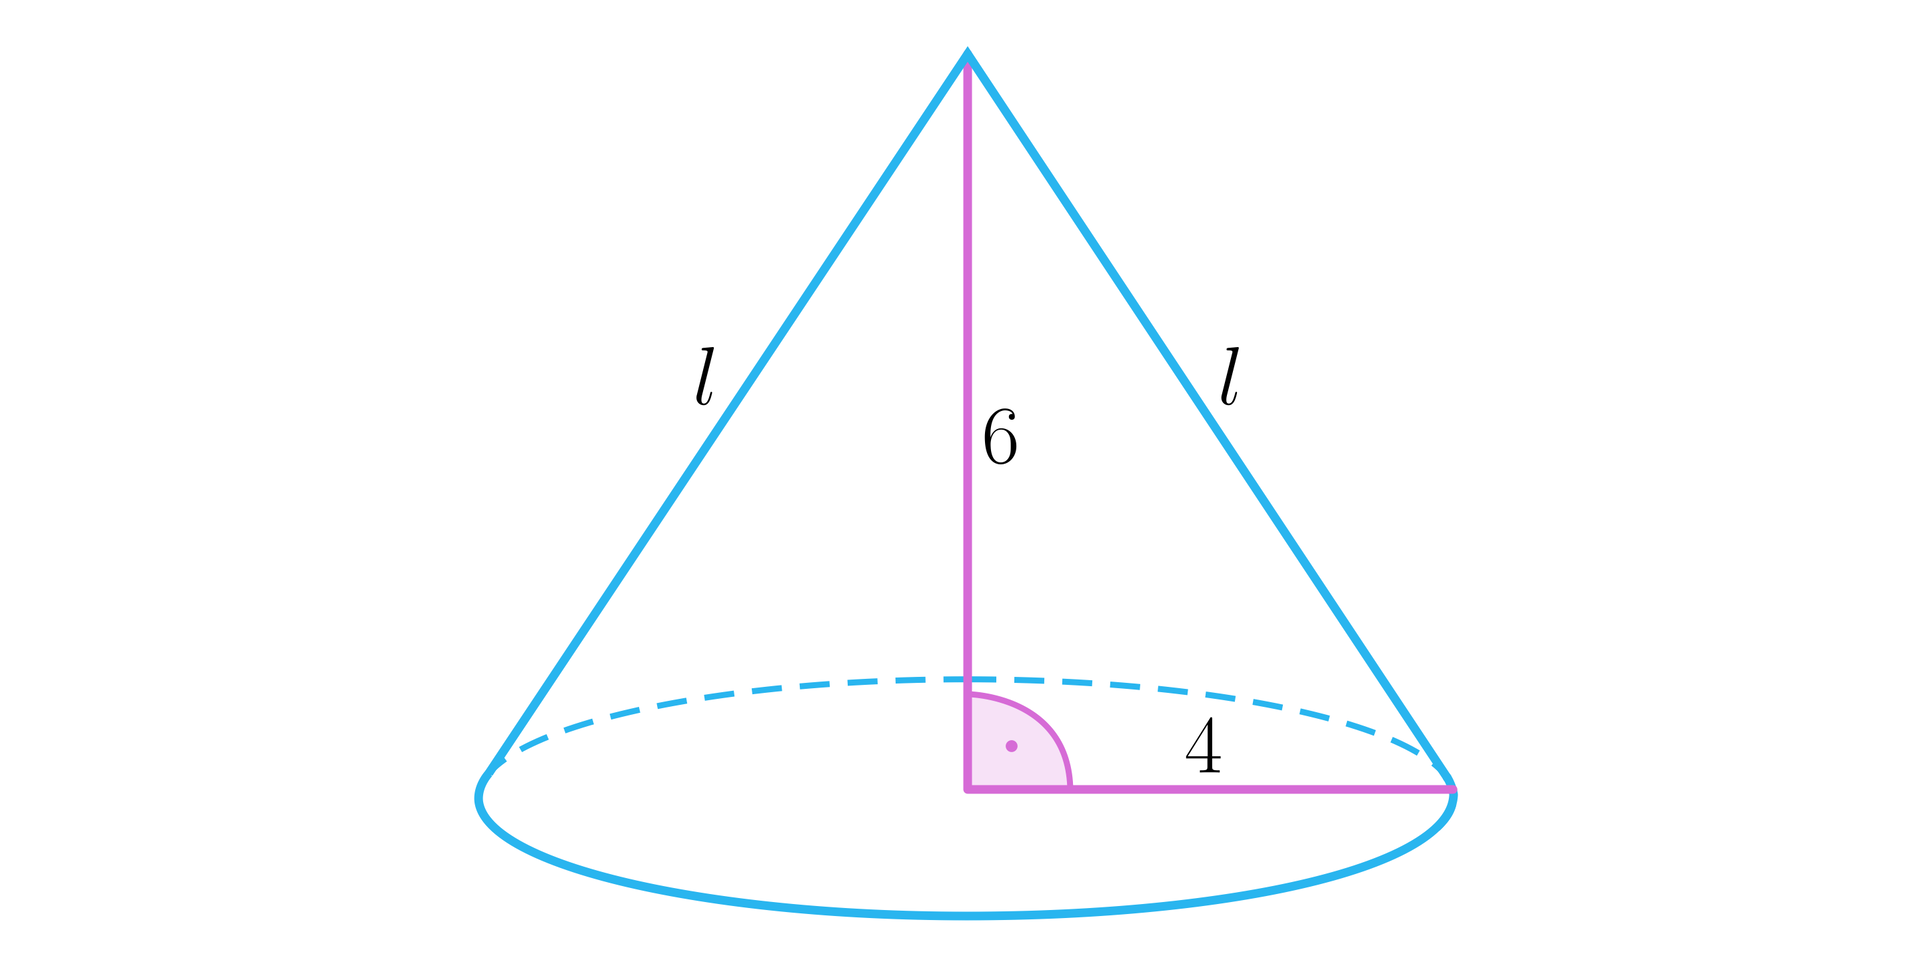 Ilustracja przedstawia stożek z promieniem podstawy o długości cztery oraz wysokością o długości sześć. Na rysunku zaznaczono także dwie tworzące bryły l. 